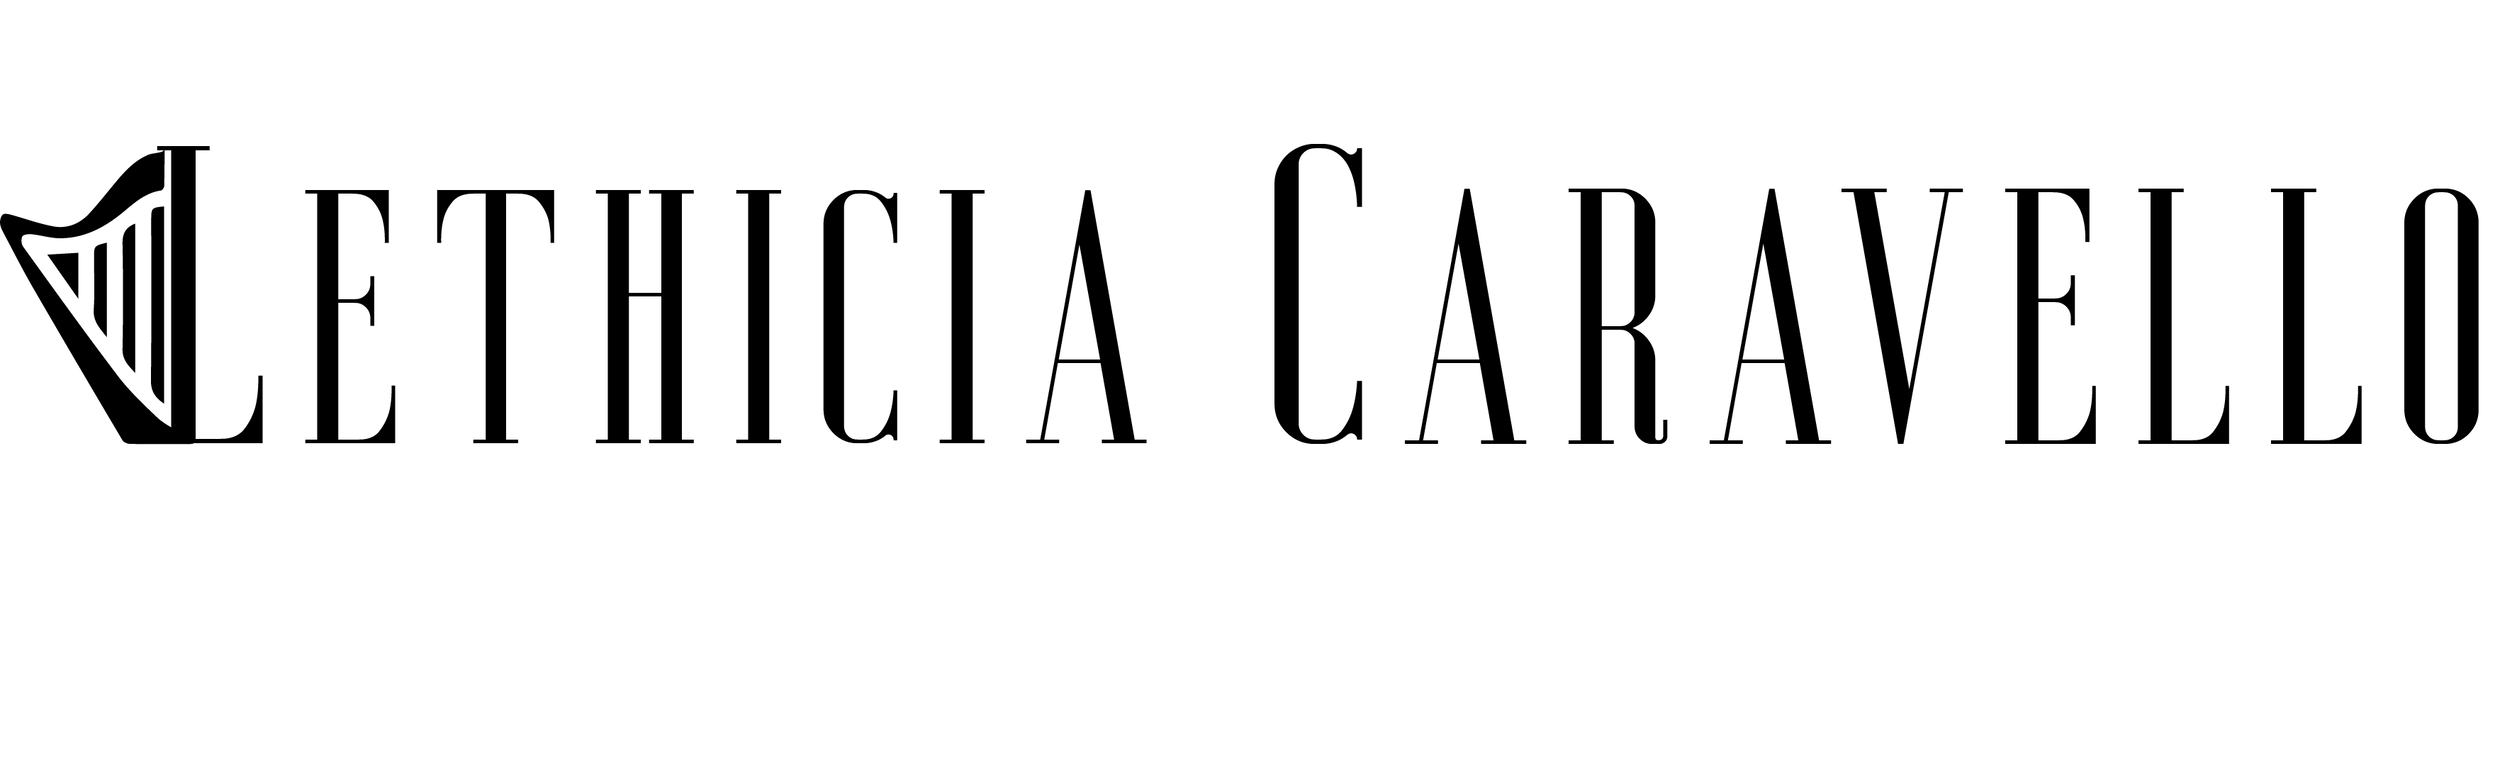 Lethicia Caravello | Professional Harpist in Colorado